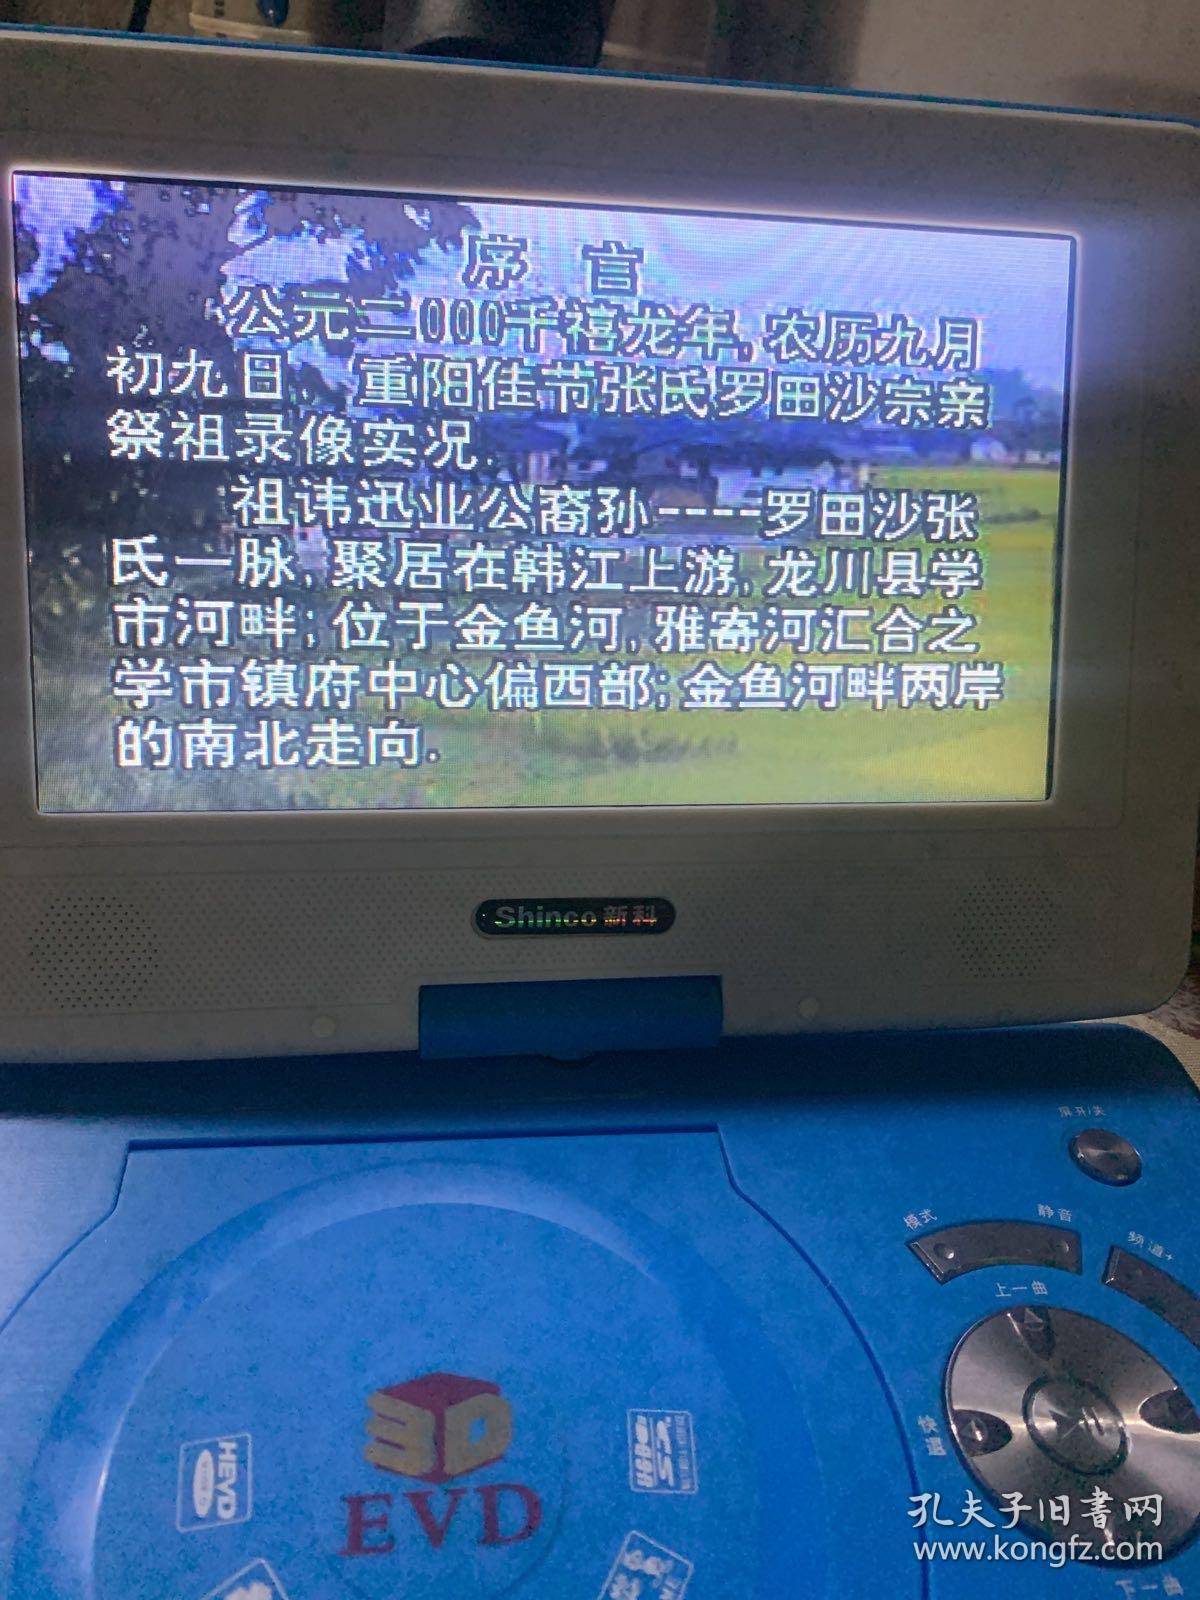 龙川县鹤市镇张氏罗田沙宗亲重阳祭祖实况DVD